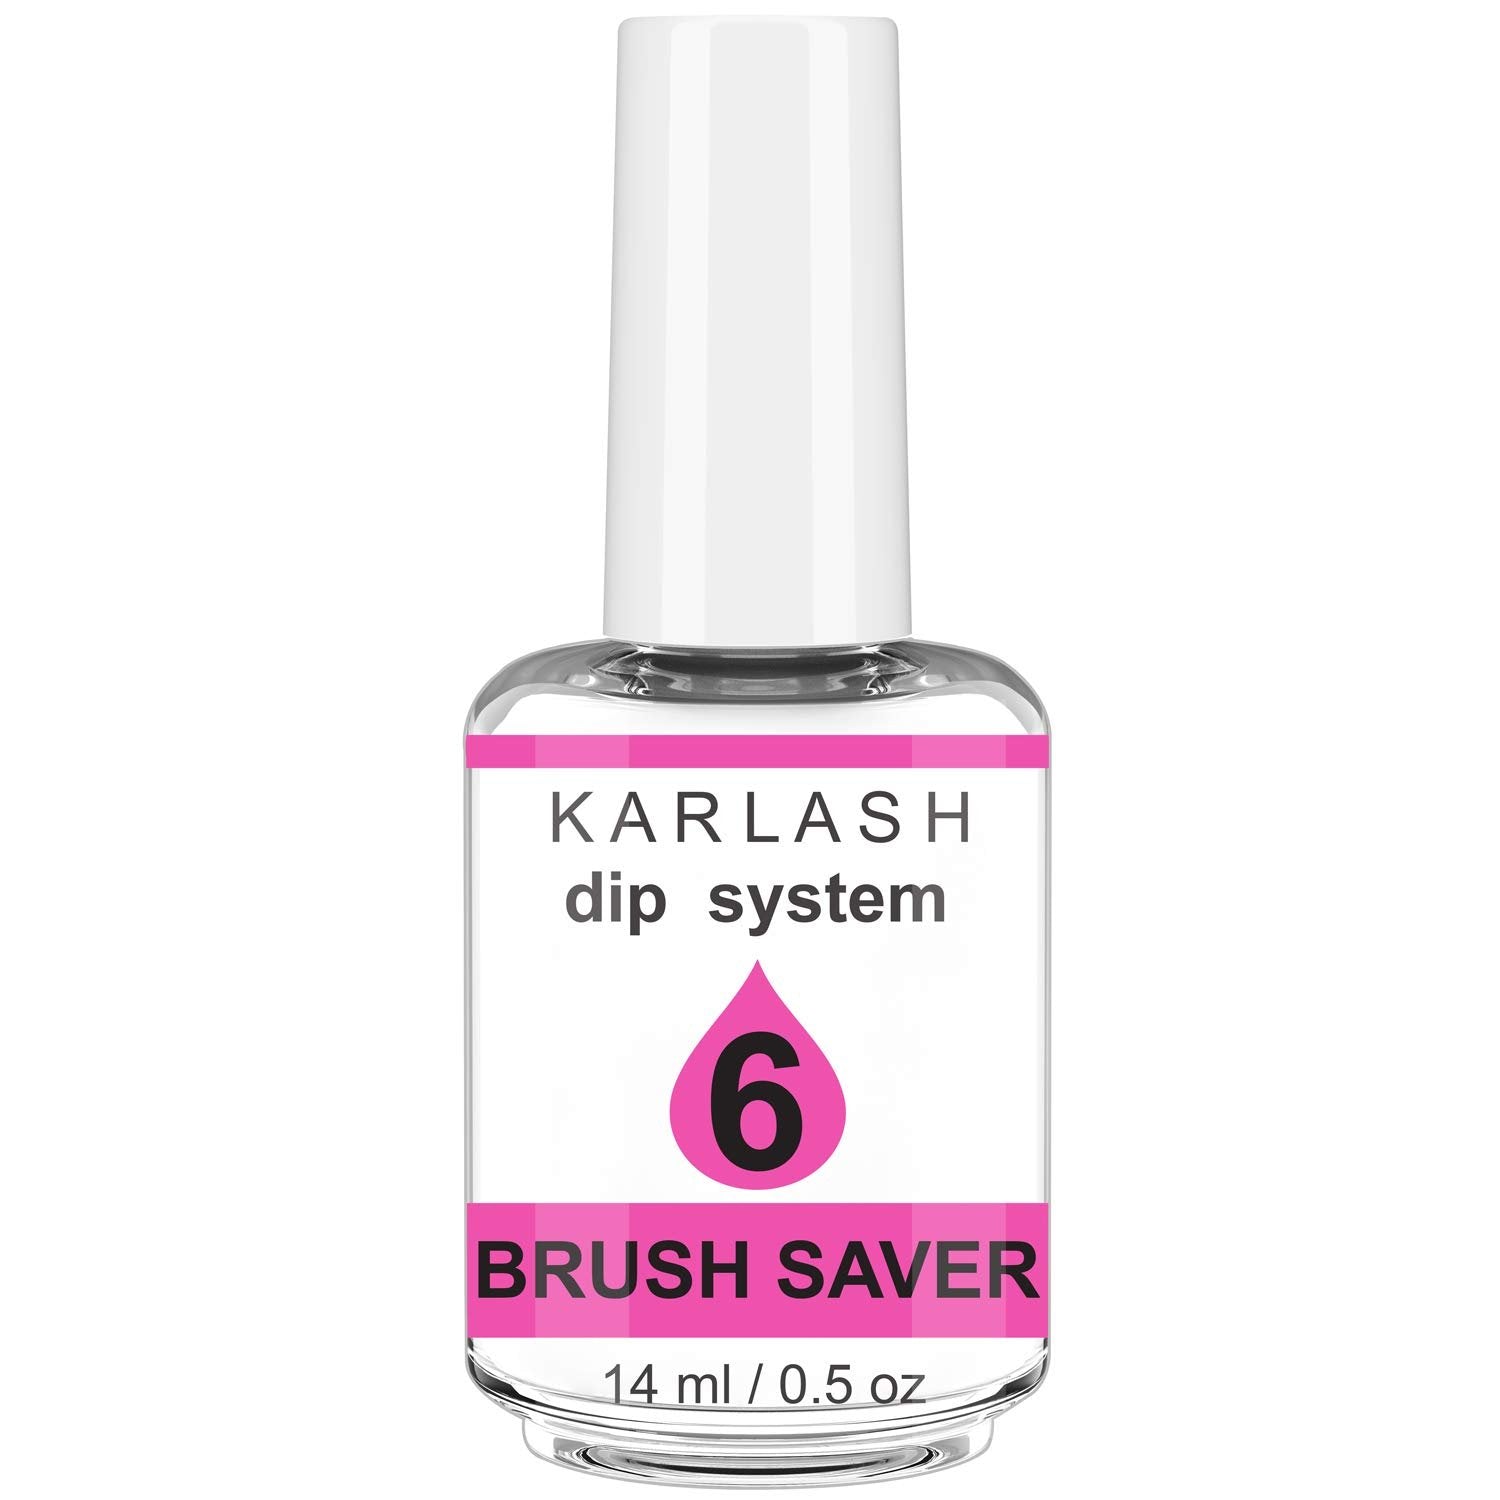 Karlash Gel Base DIP Powder System 0.5 oz (Step 6 Brush Saver)